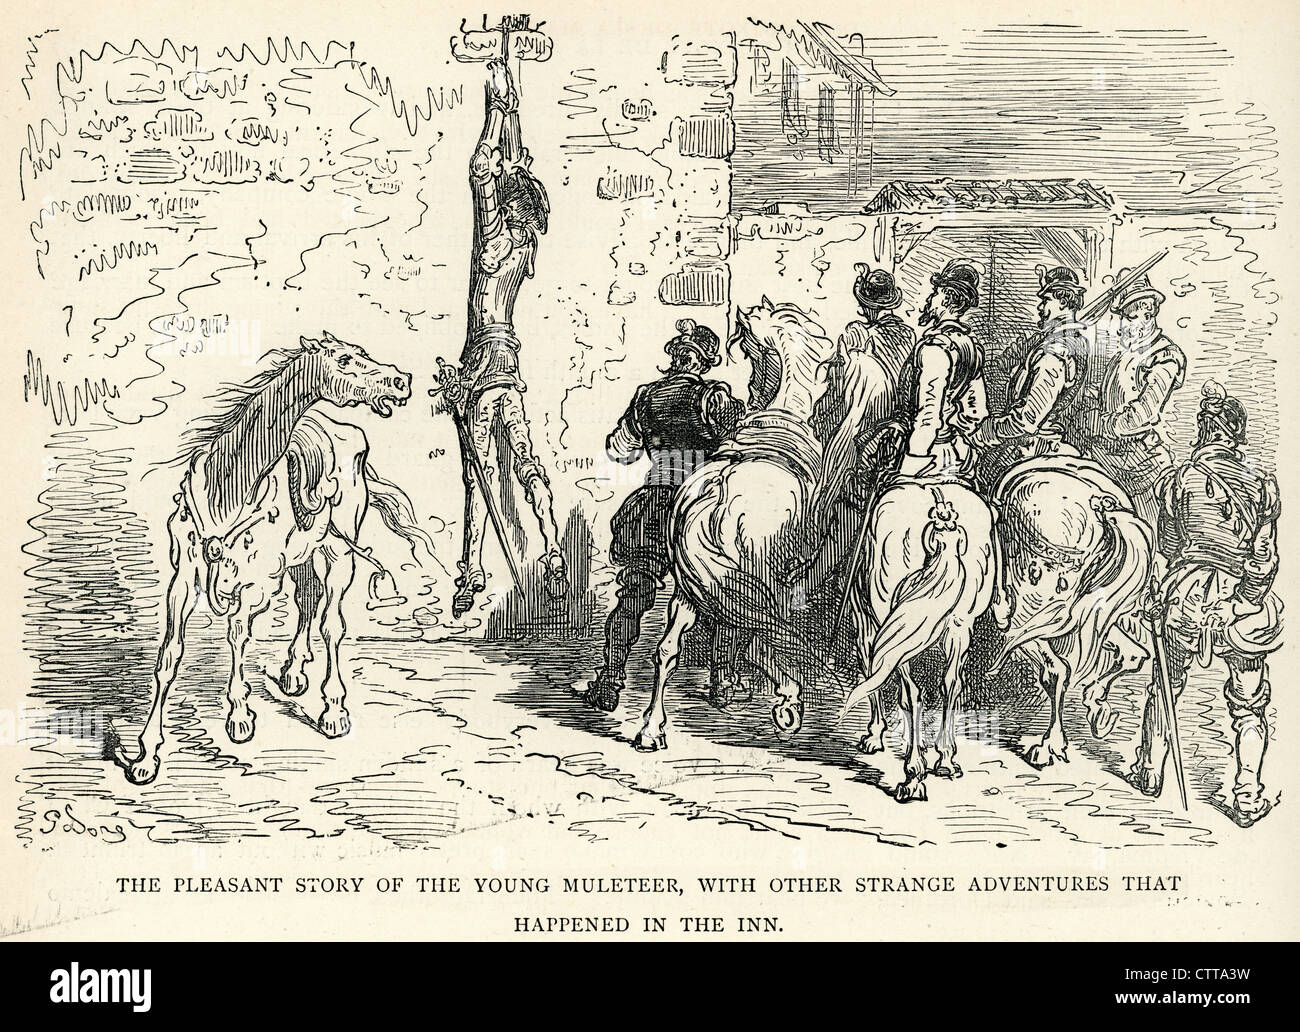 Angenehme Geschichte von der jungen Muleteer mit andere seltsame Abenteuer im Inn. Illustration von Gustave Dore von Don Quijote. Stockfoto